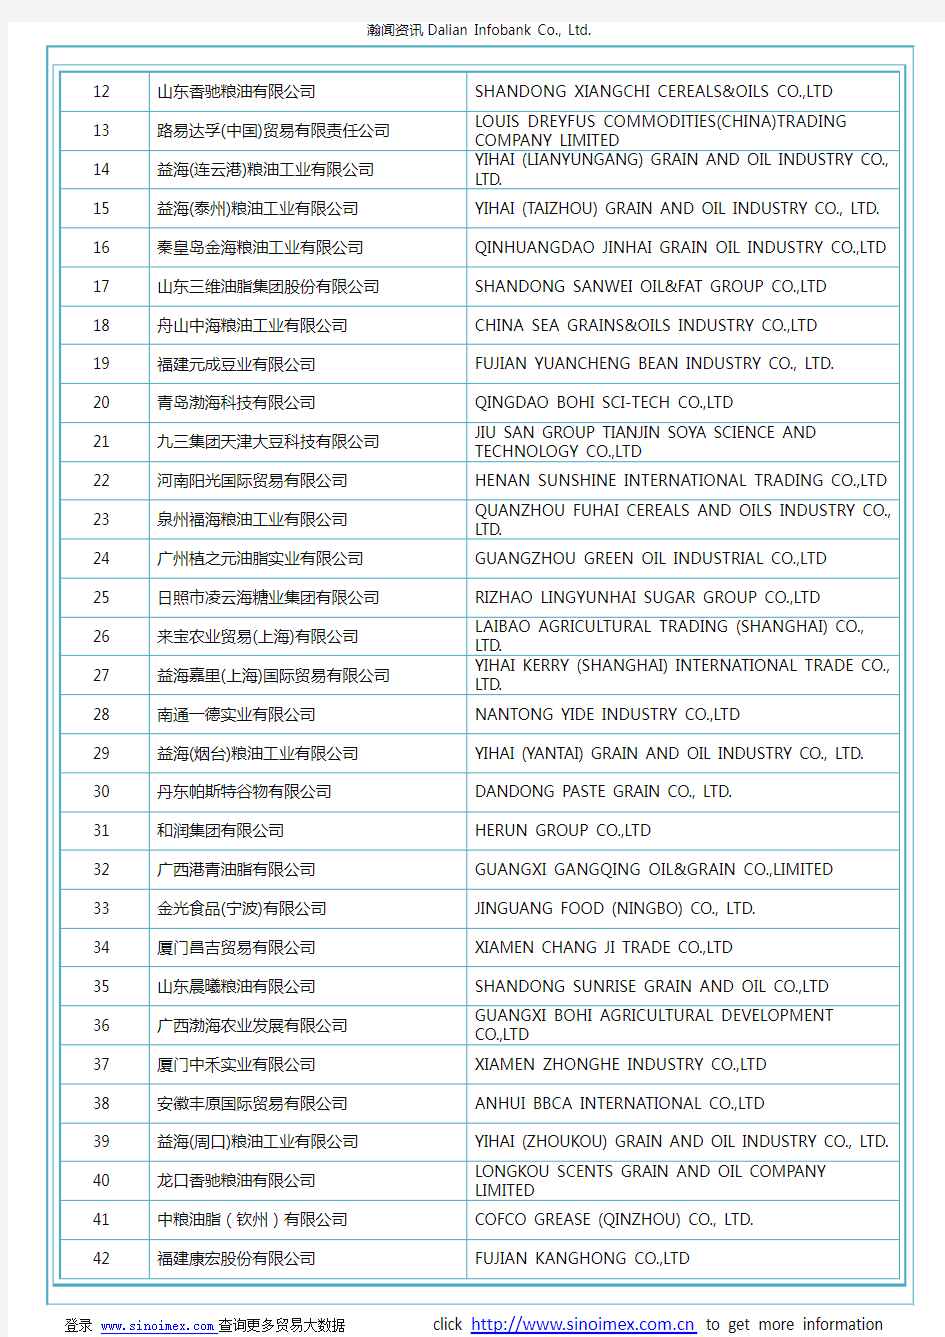 黄大豆,种用除外(HS 12019010)2017 中国(201个)进口商排名(按进口额排名)